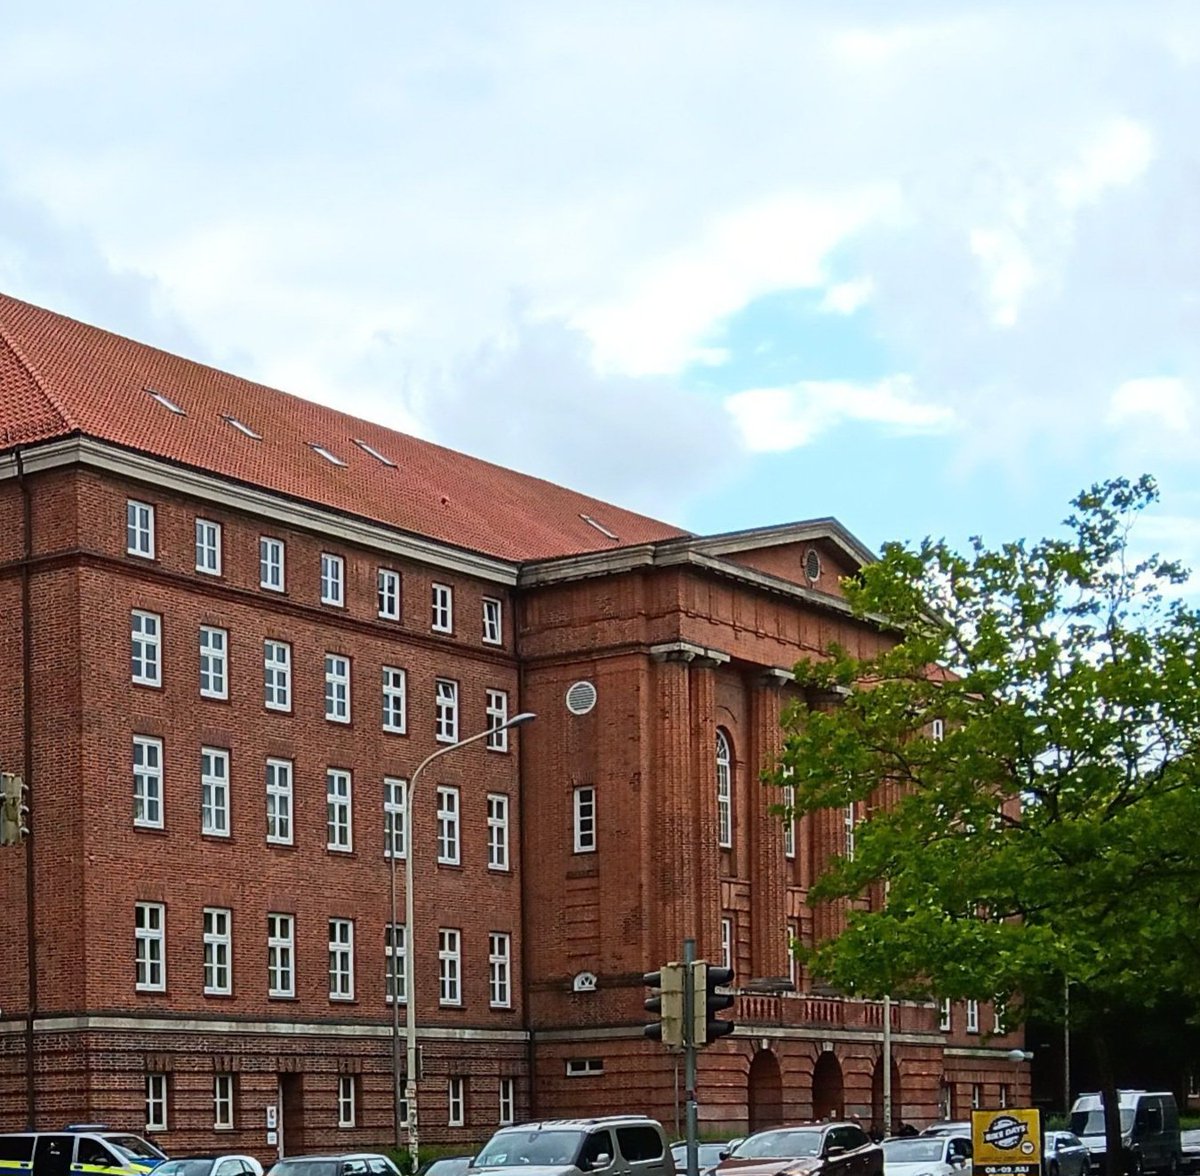 Morgen, Freitag den 14.07. um 9 Uhr findet in #Kiel der zweite #HUProzess-Tag statt. Solidarische Unterstützung der Betroffenen im Gerichtssaal ist ausdrücklich erwünscht. Nächster Termin mit Kundgebung vor dem Gericht ist am 02.08. tatorthenstedtulzburg.noblogs.org/prozesstermine/ #tatorthu #noafd